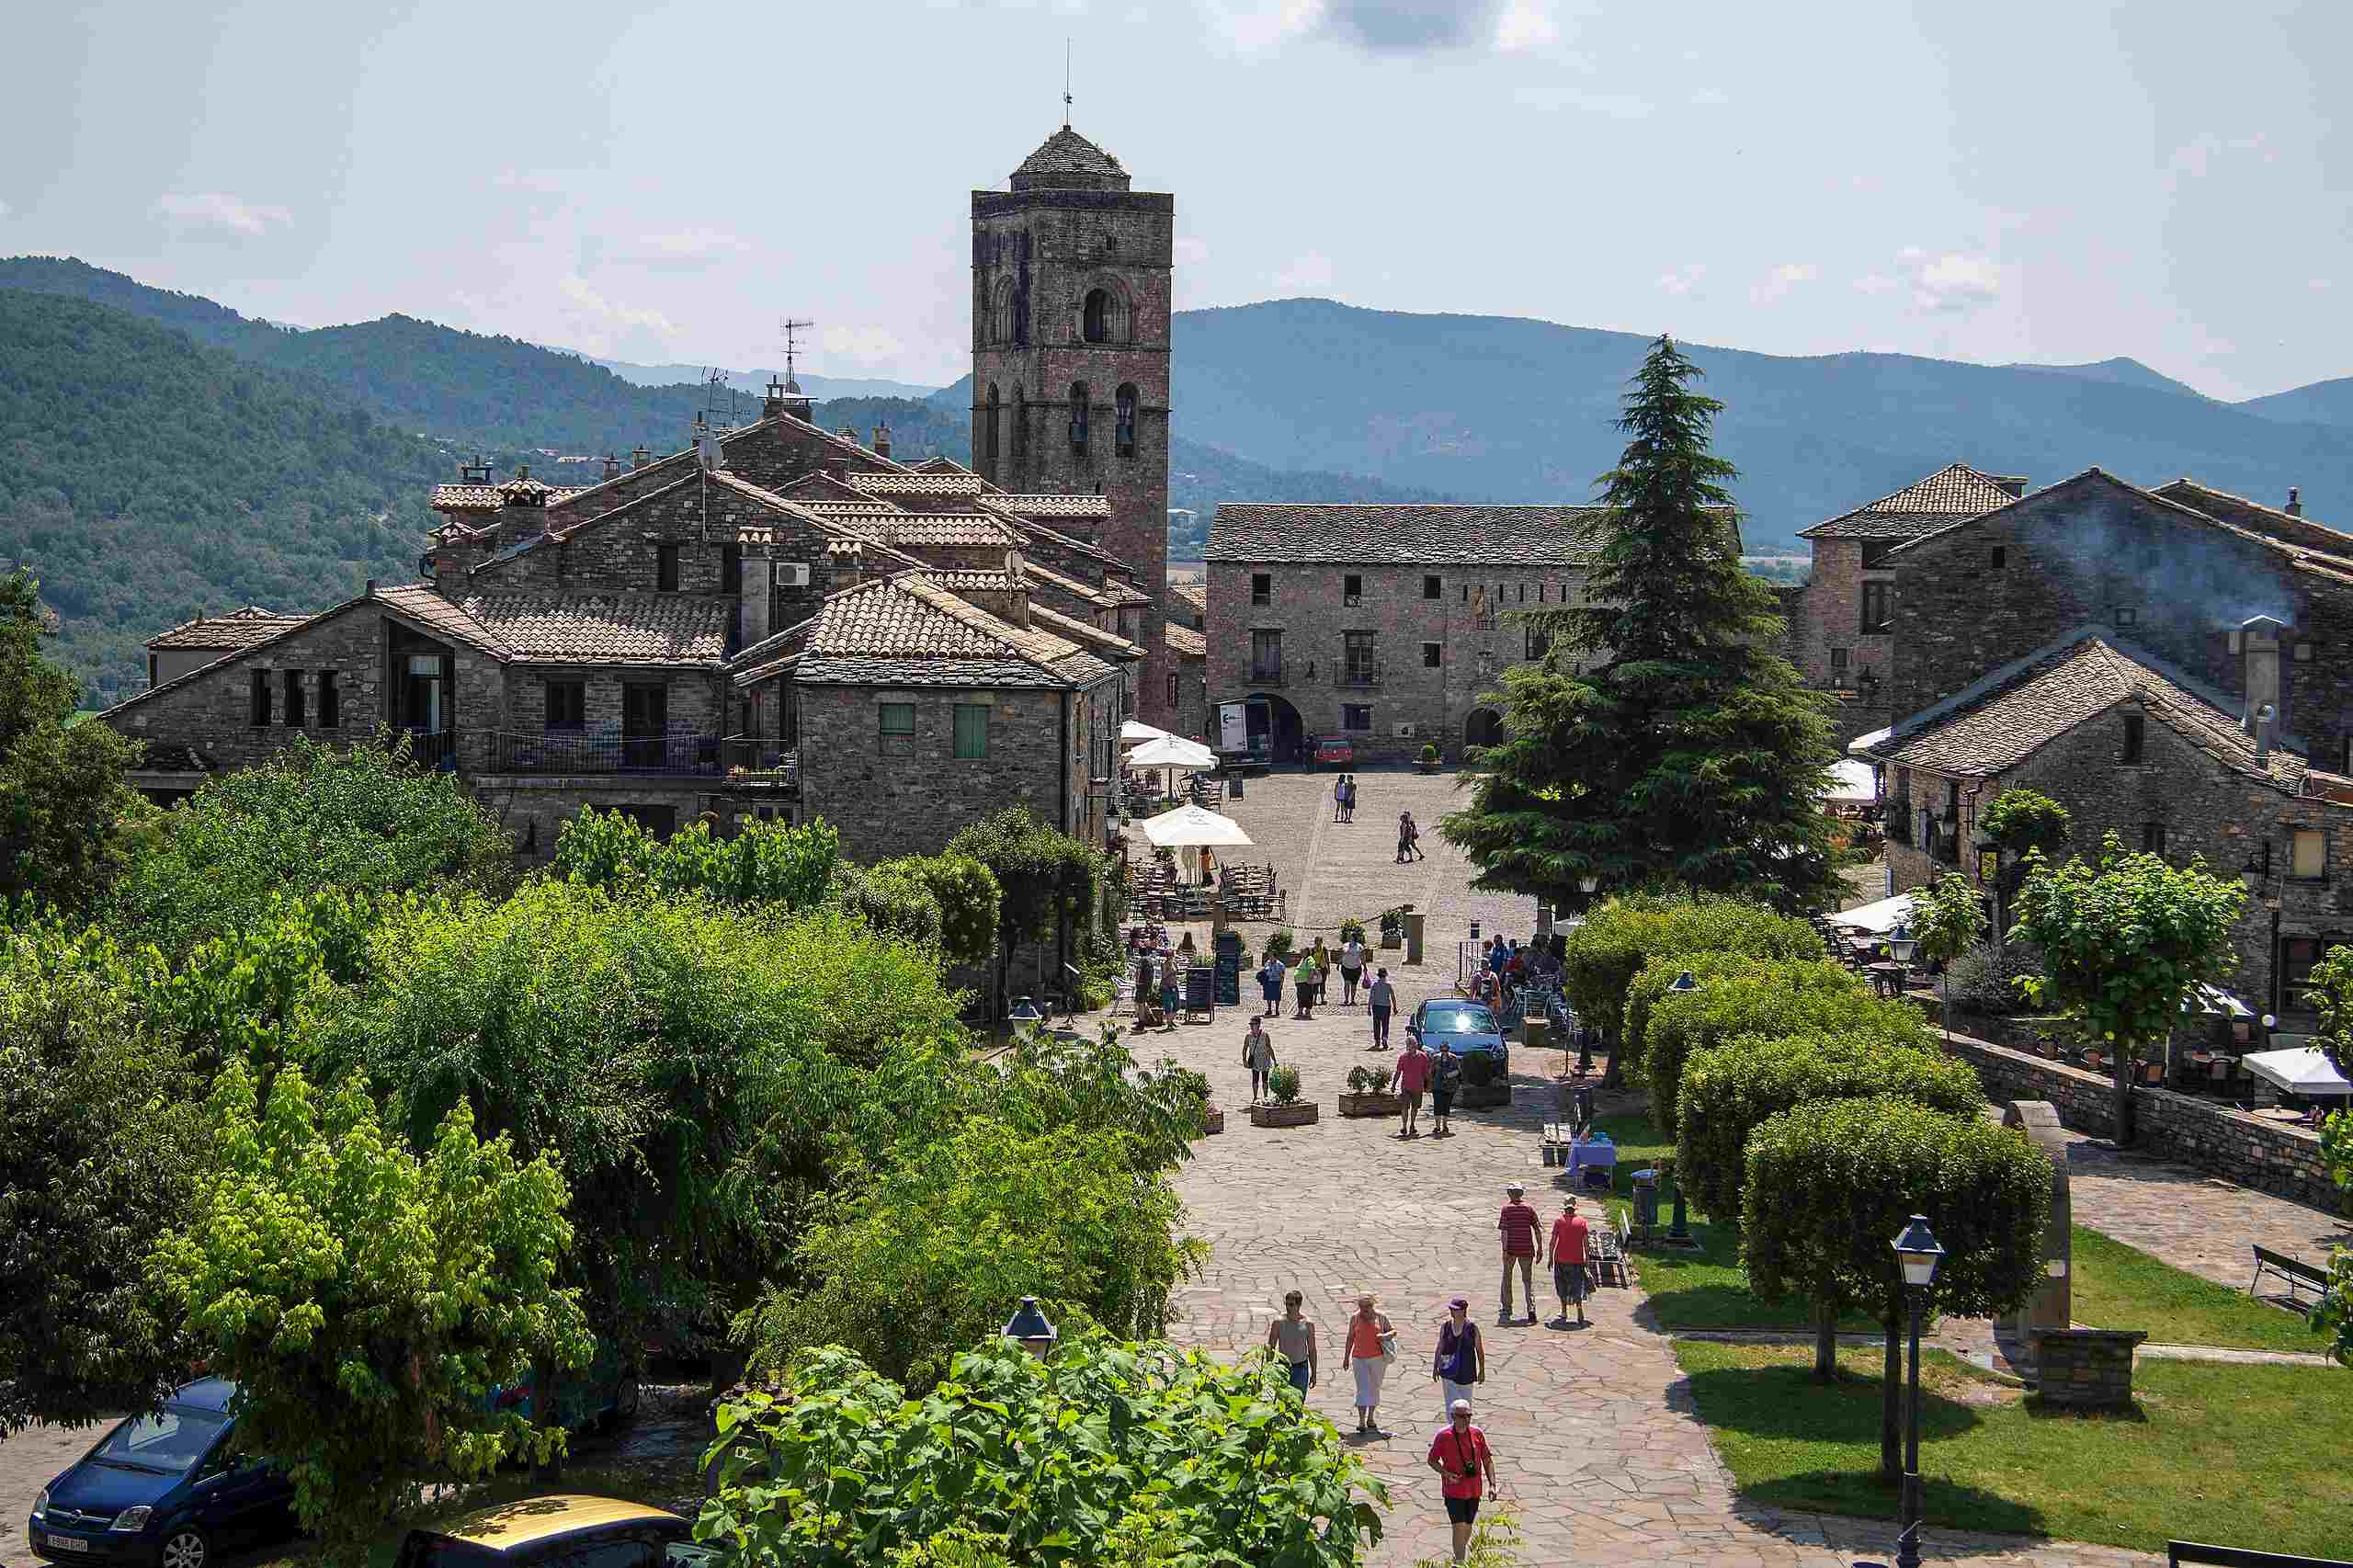 Cual es el pueblo mas bonito de asturias